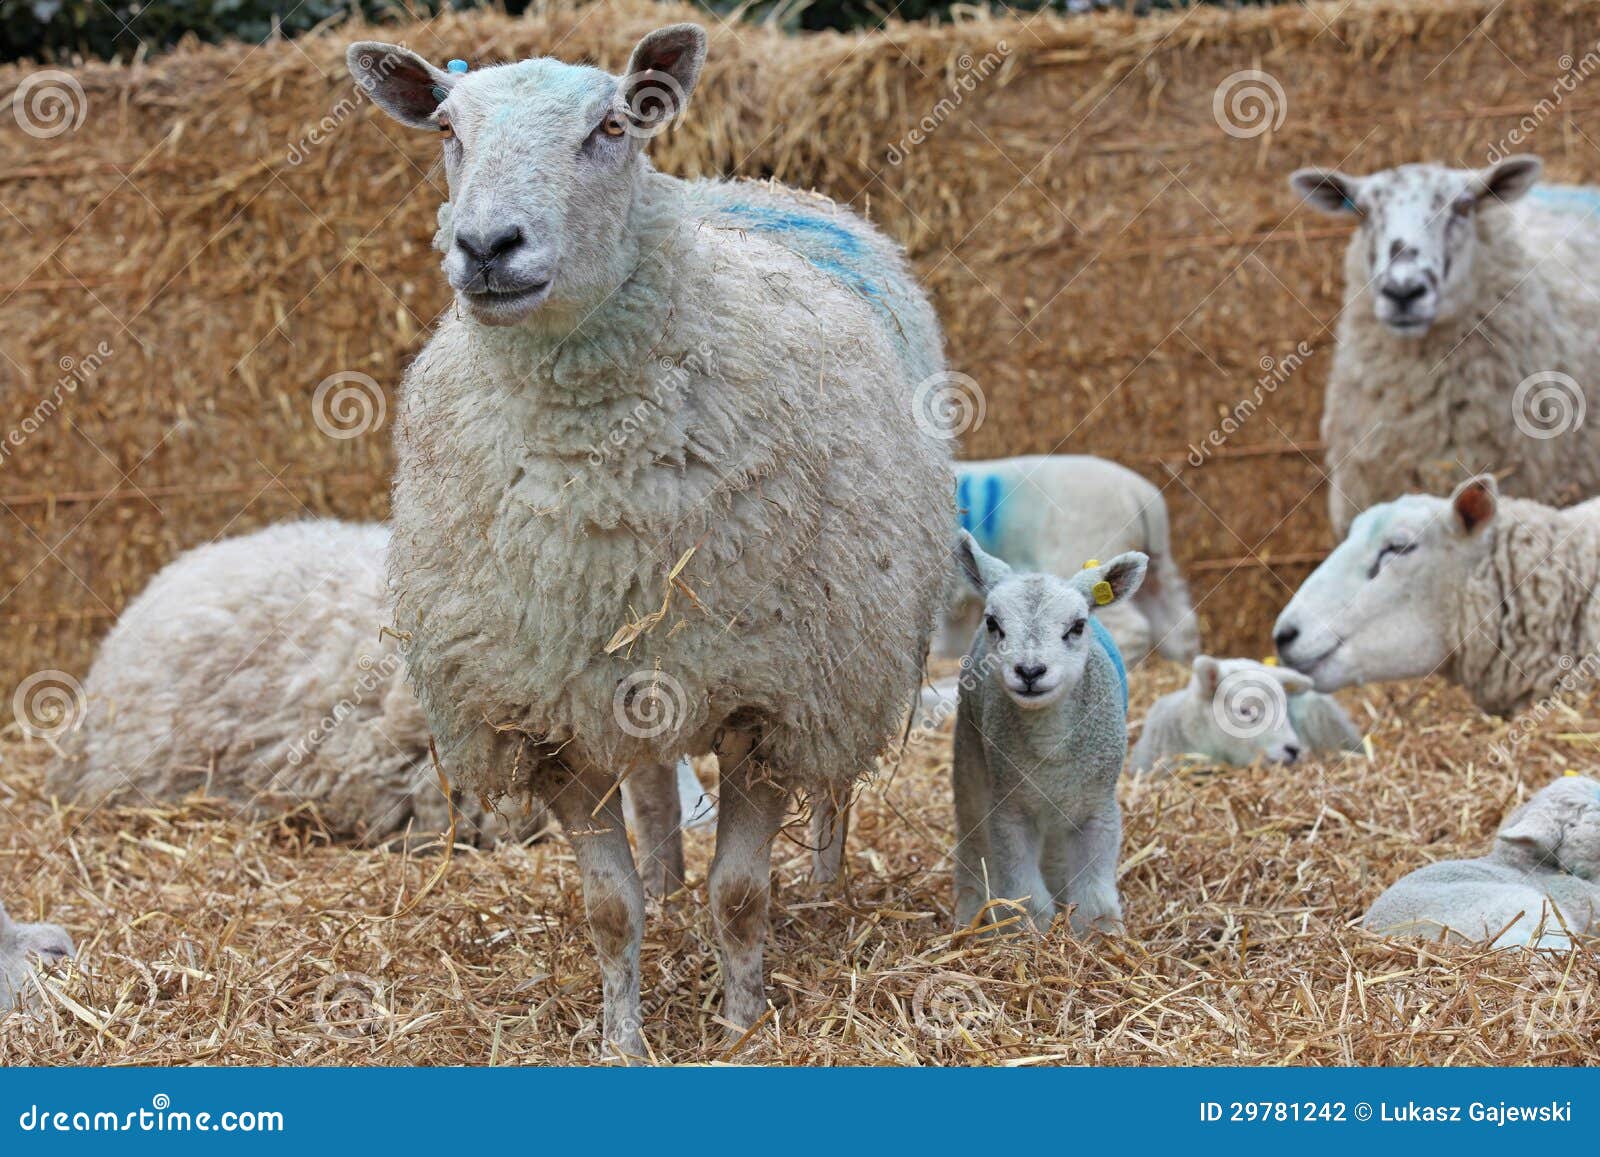 ewe with her lamb